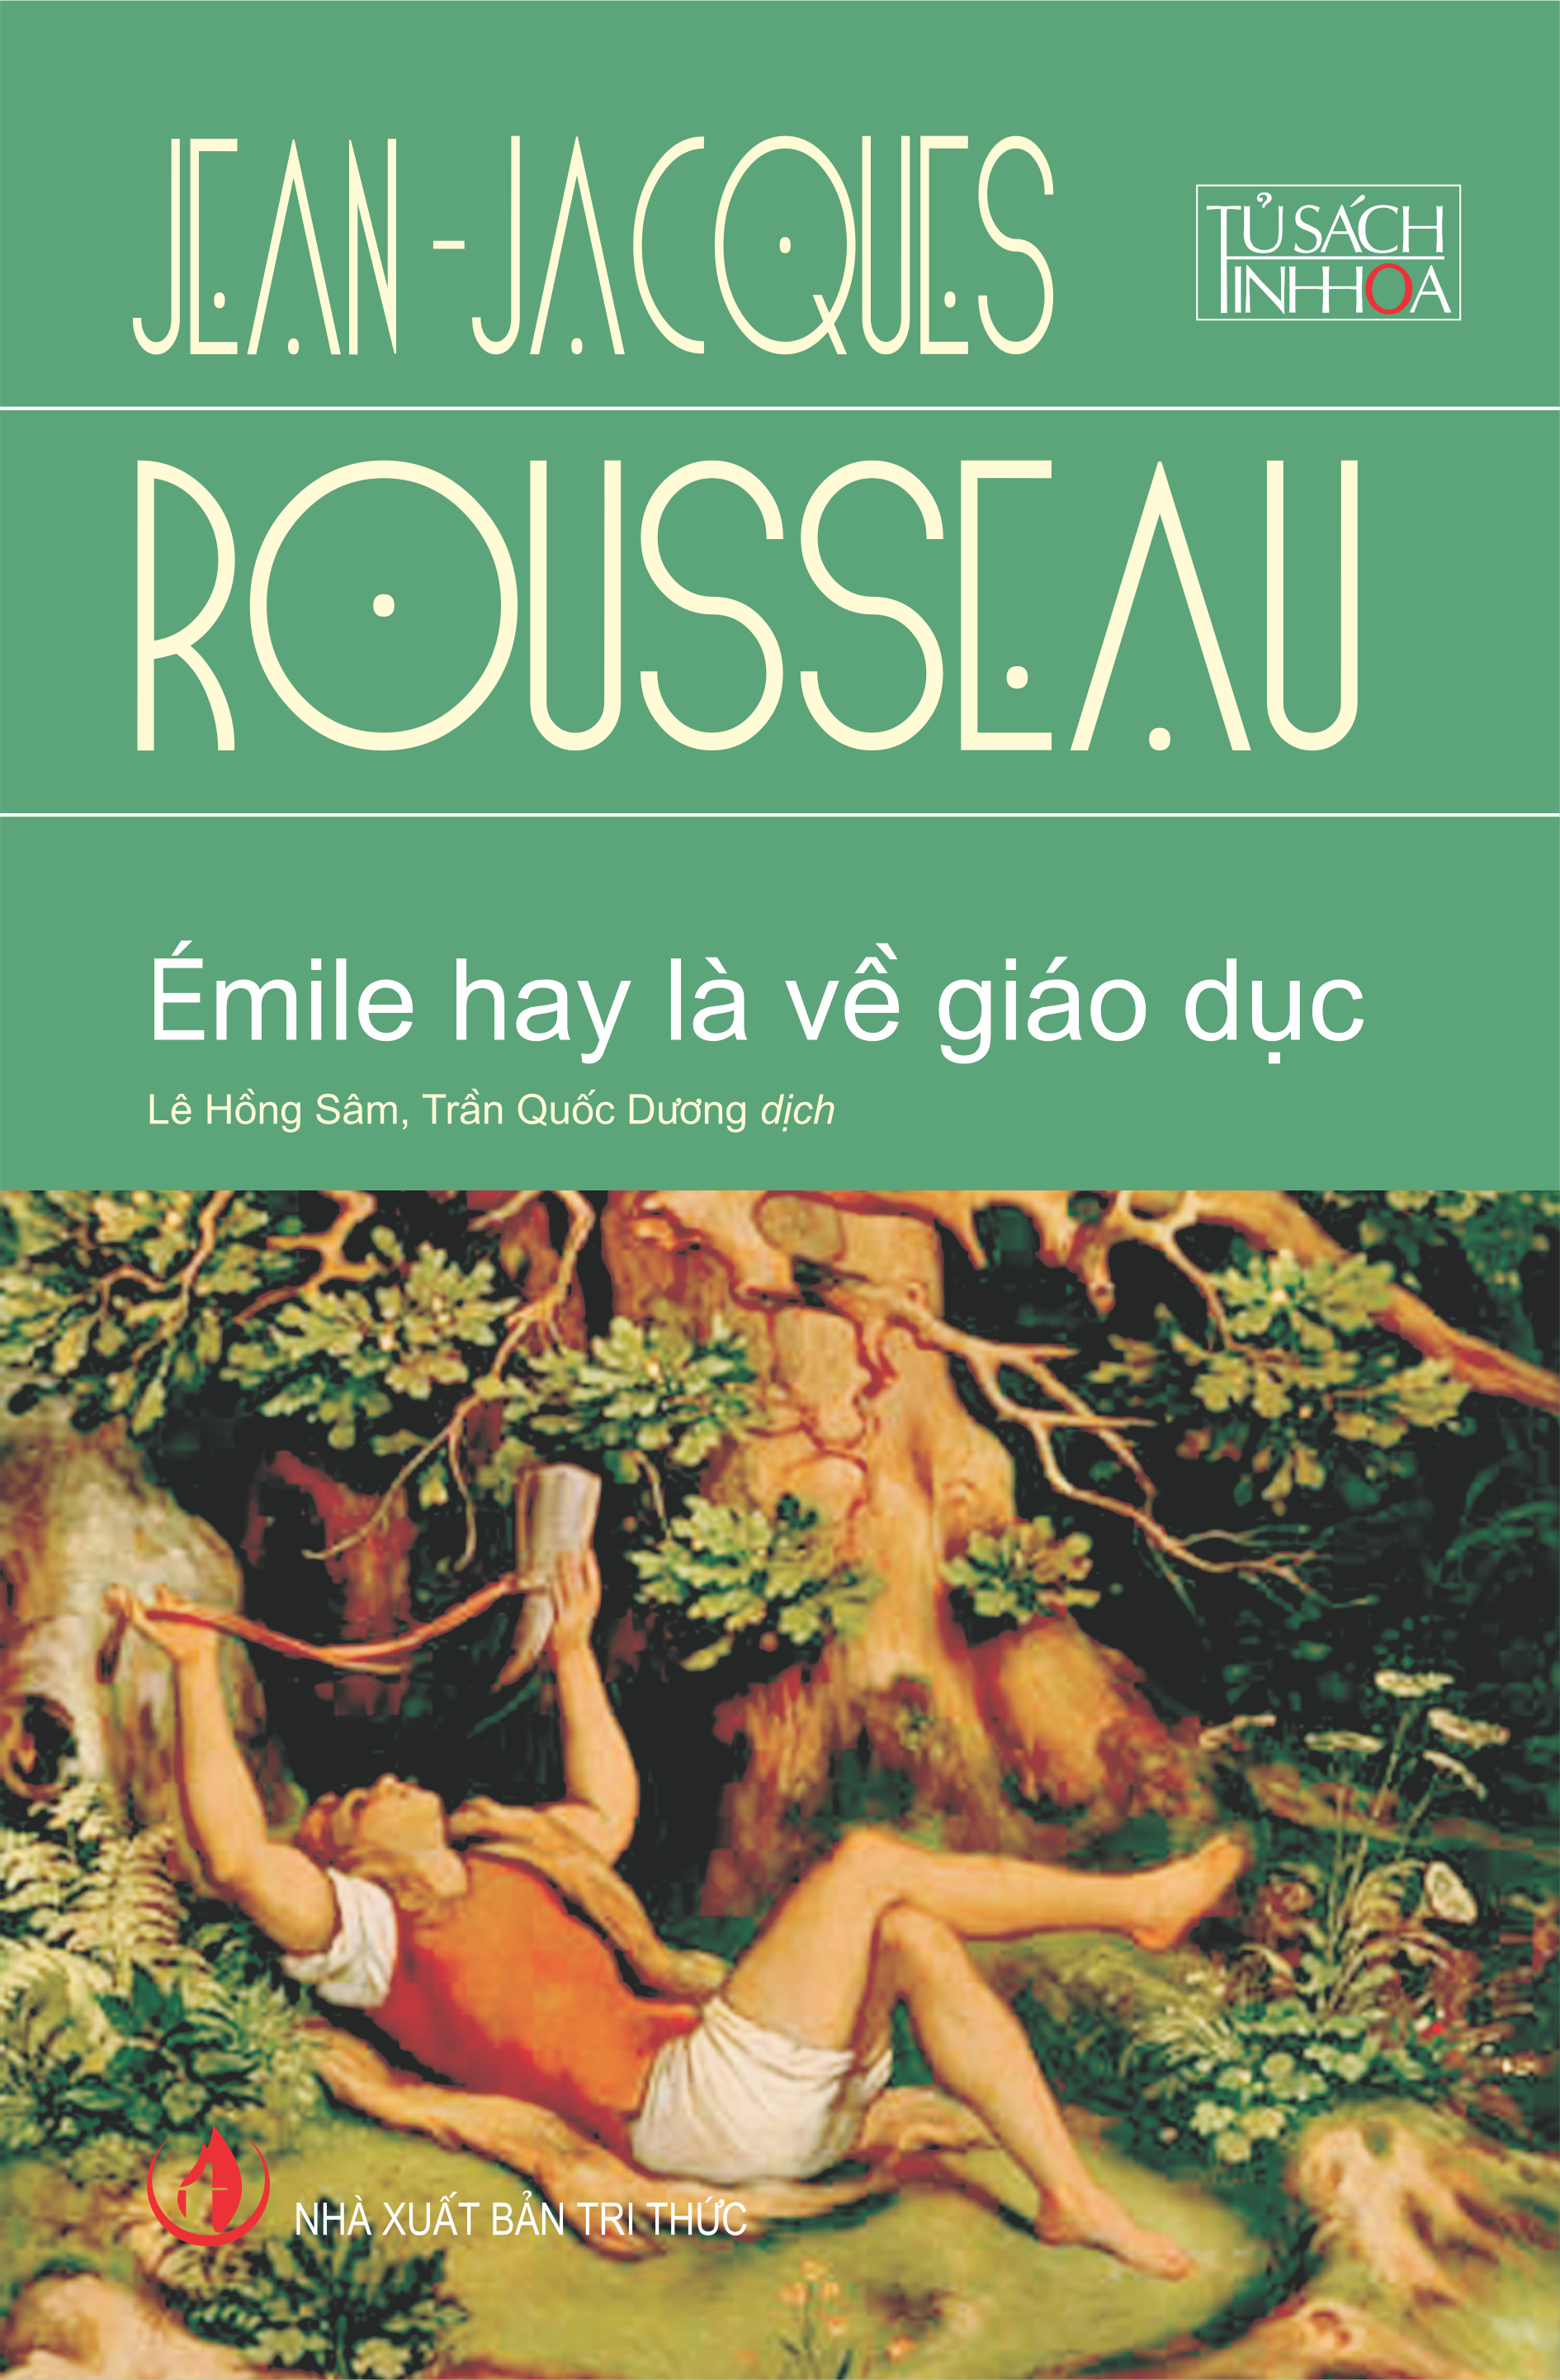 “Émile hay là về giáo dục”: Cuốn sách kinh điển về dạy và học làm người